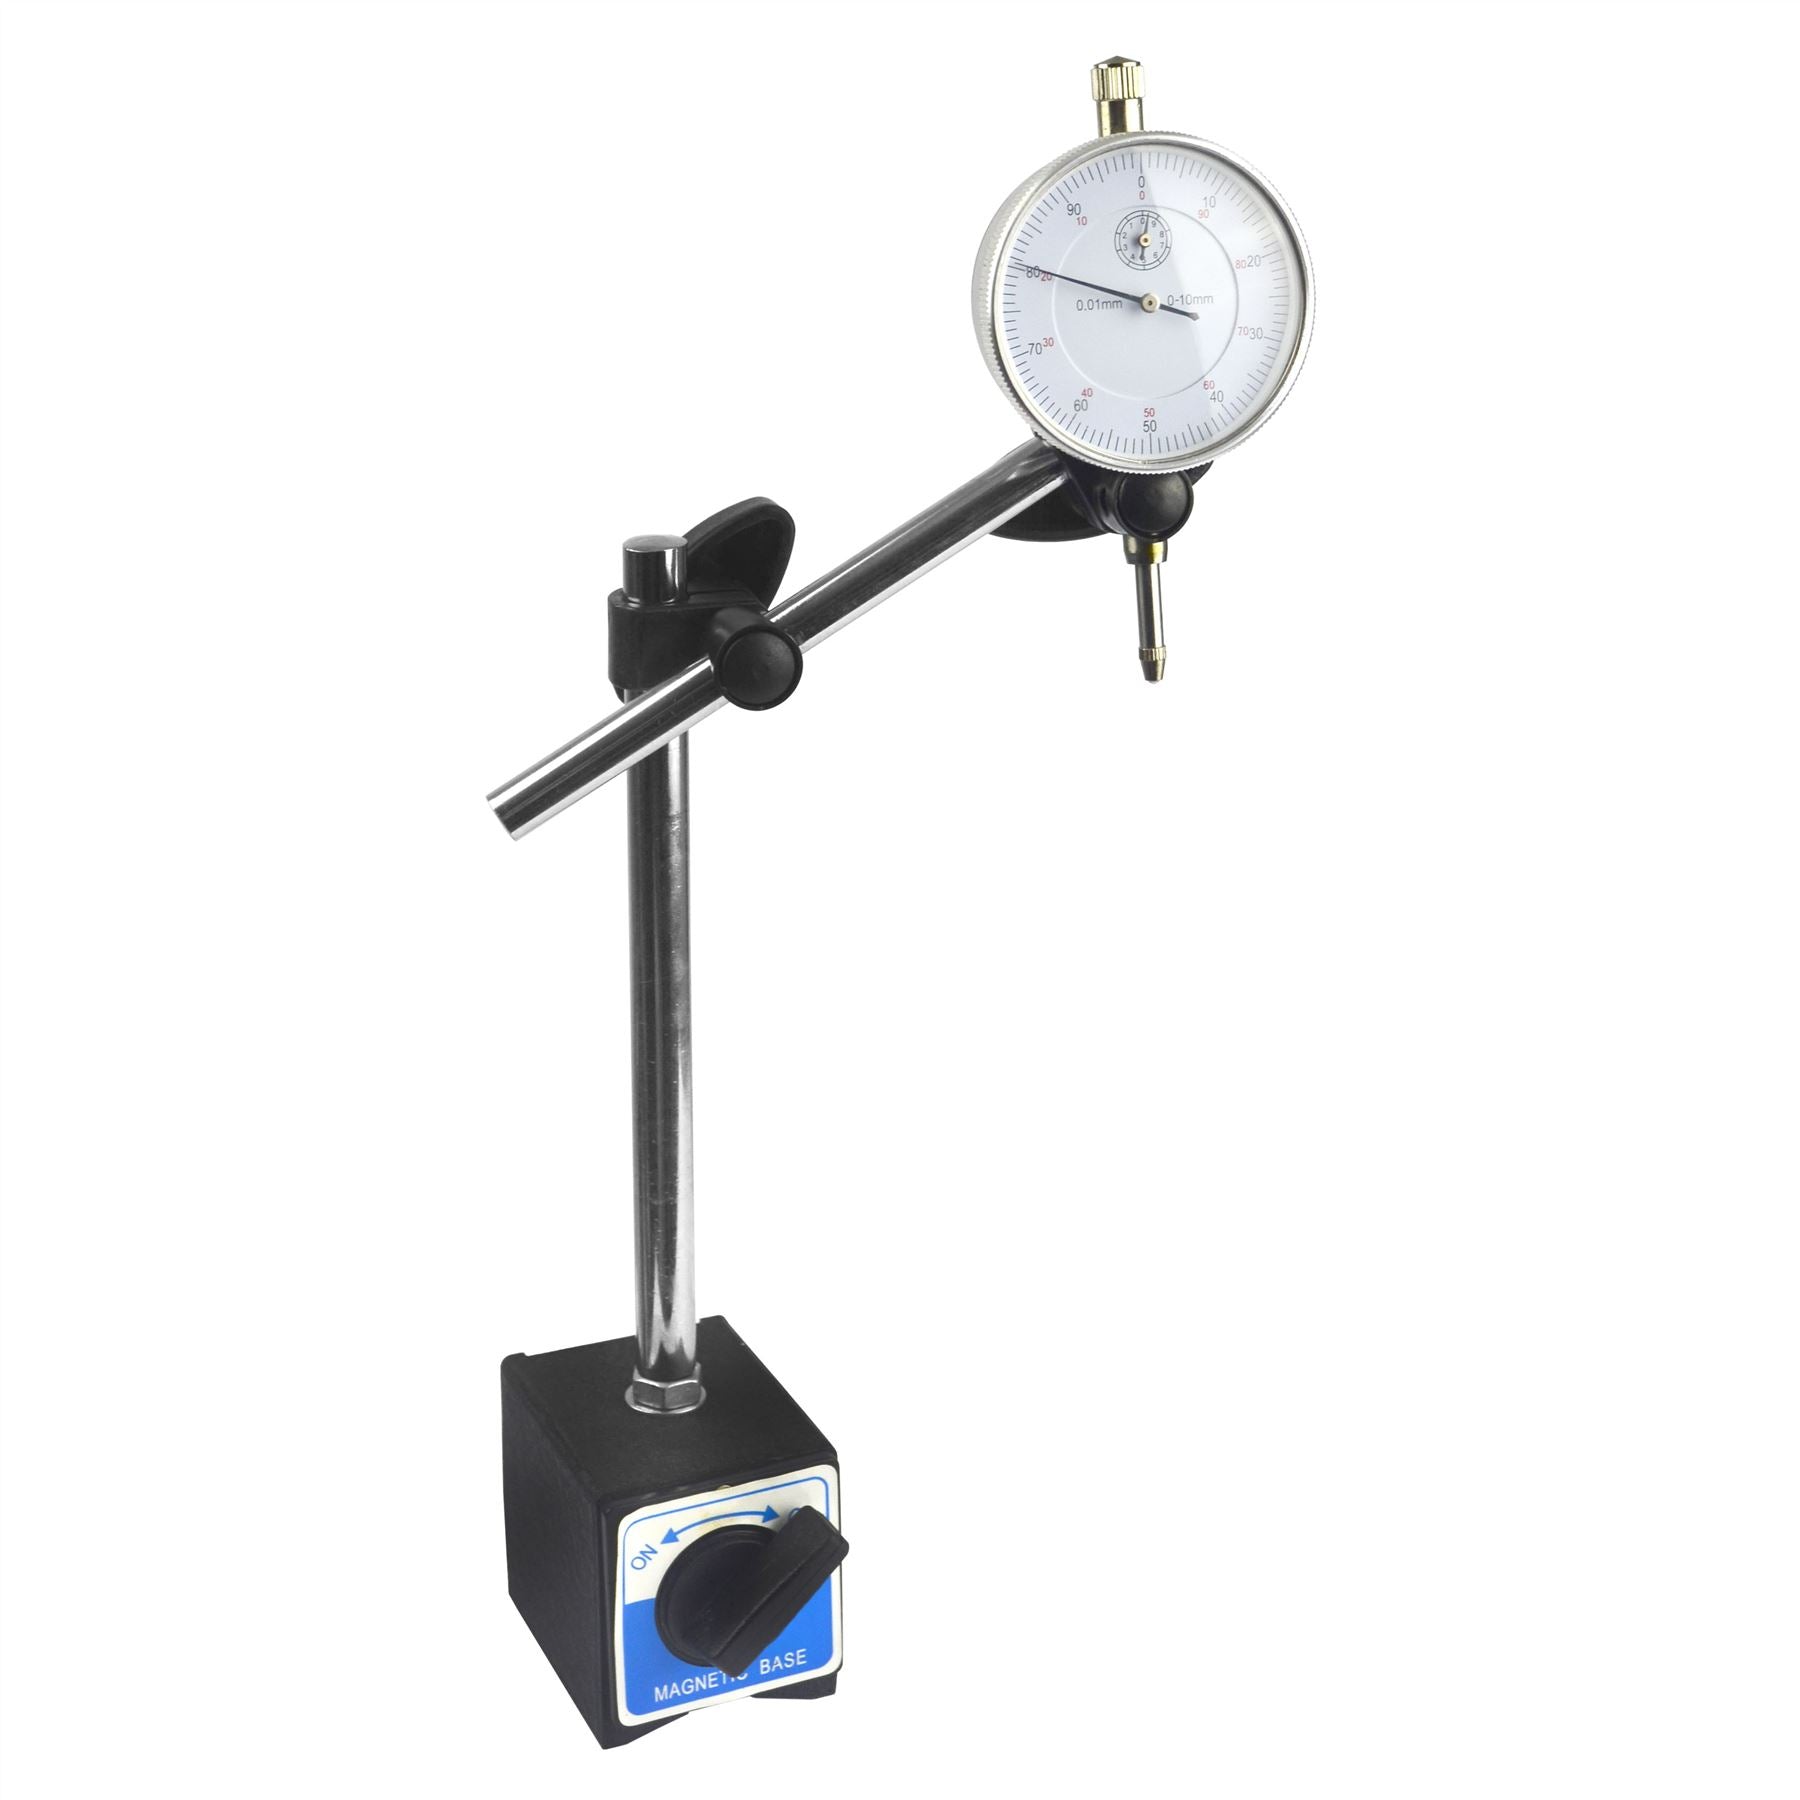 Dial test indicator DTI gauge & magnetic base stand clock gauge TDC BERGEN